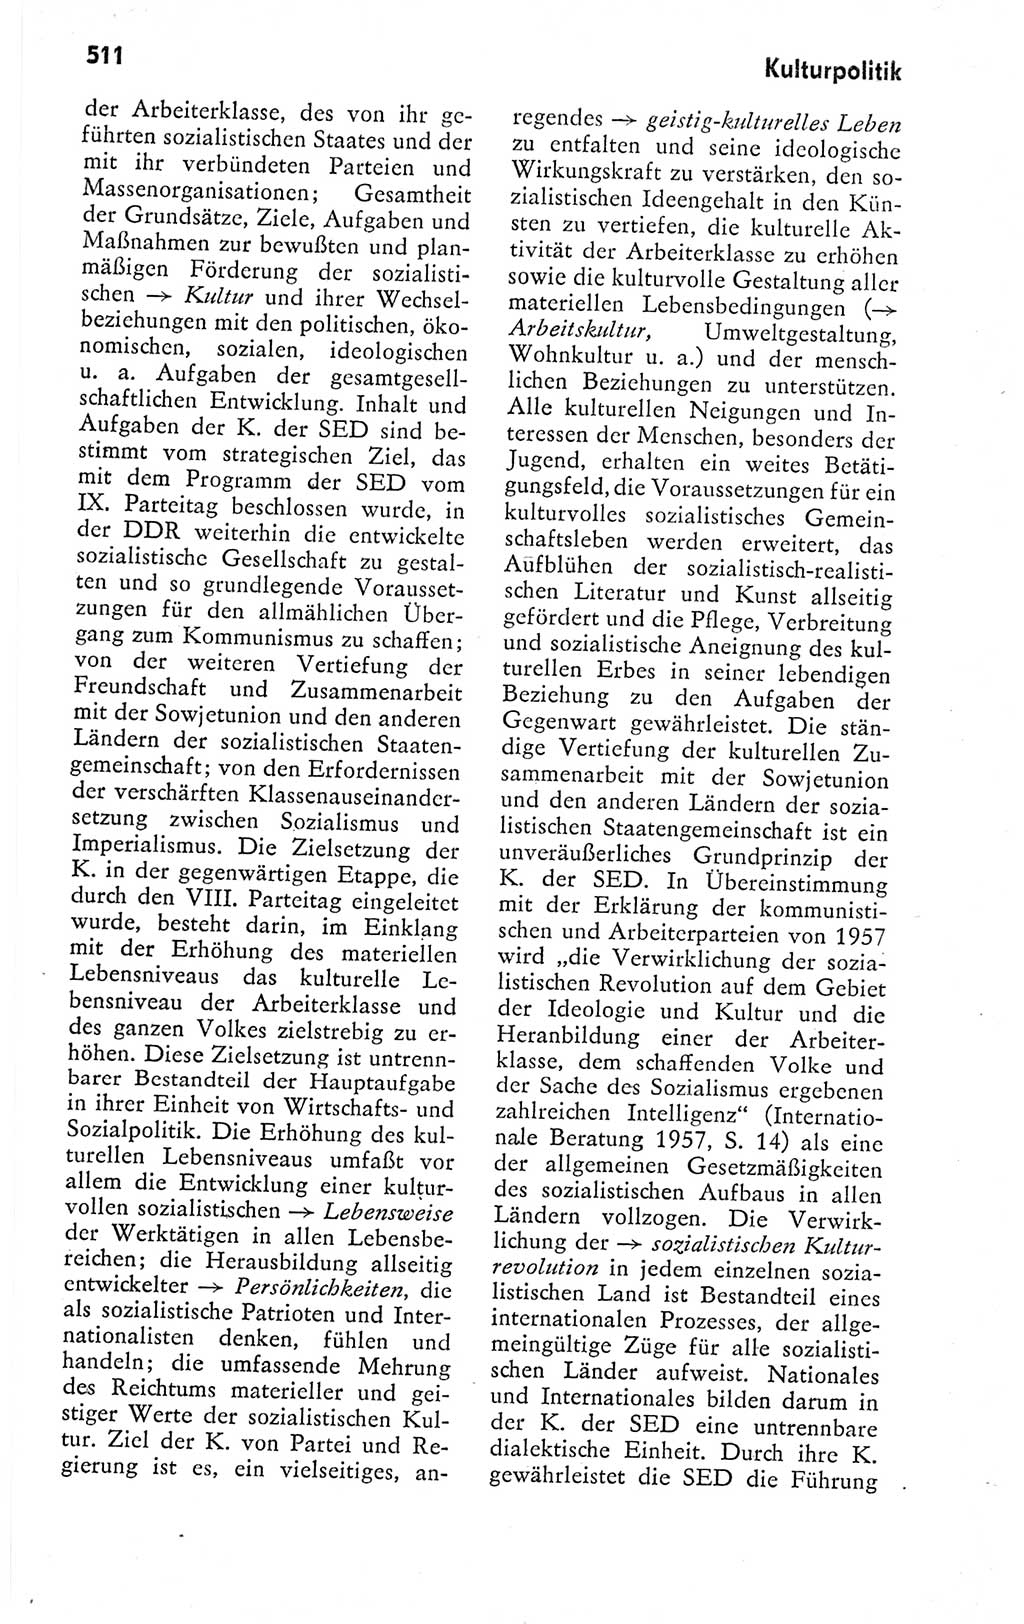 Kleines politisches Wörterbuch [Deutsche Demokratische Republik (DDR)] 1978, Seite 511 (Kl. pol. Wb. DDR 1978, S. 511)